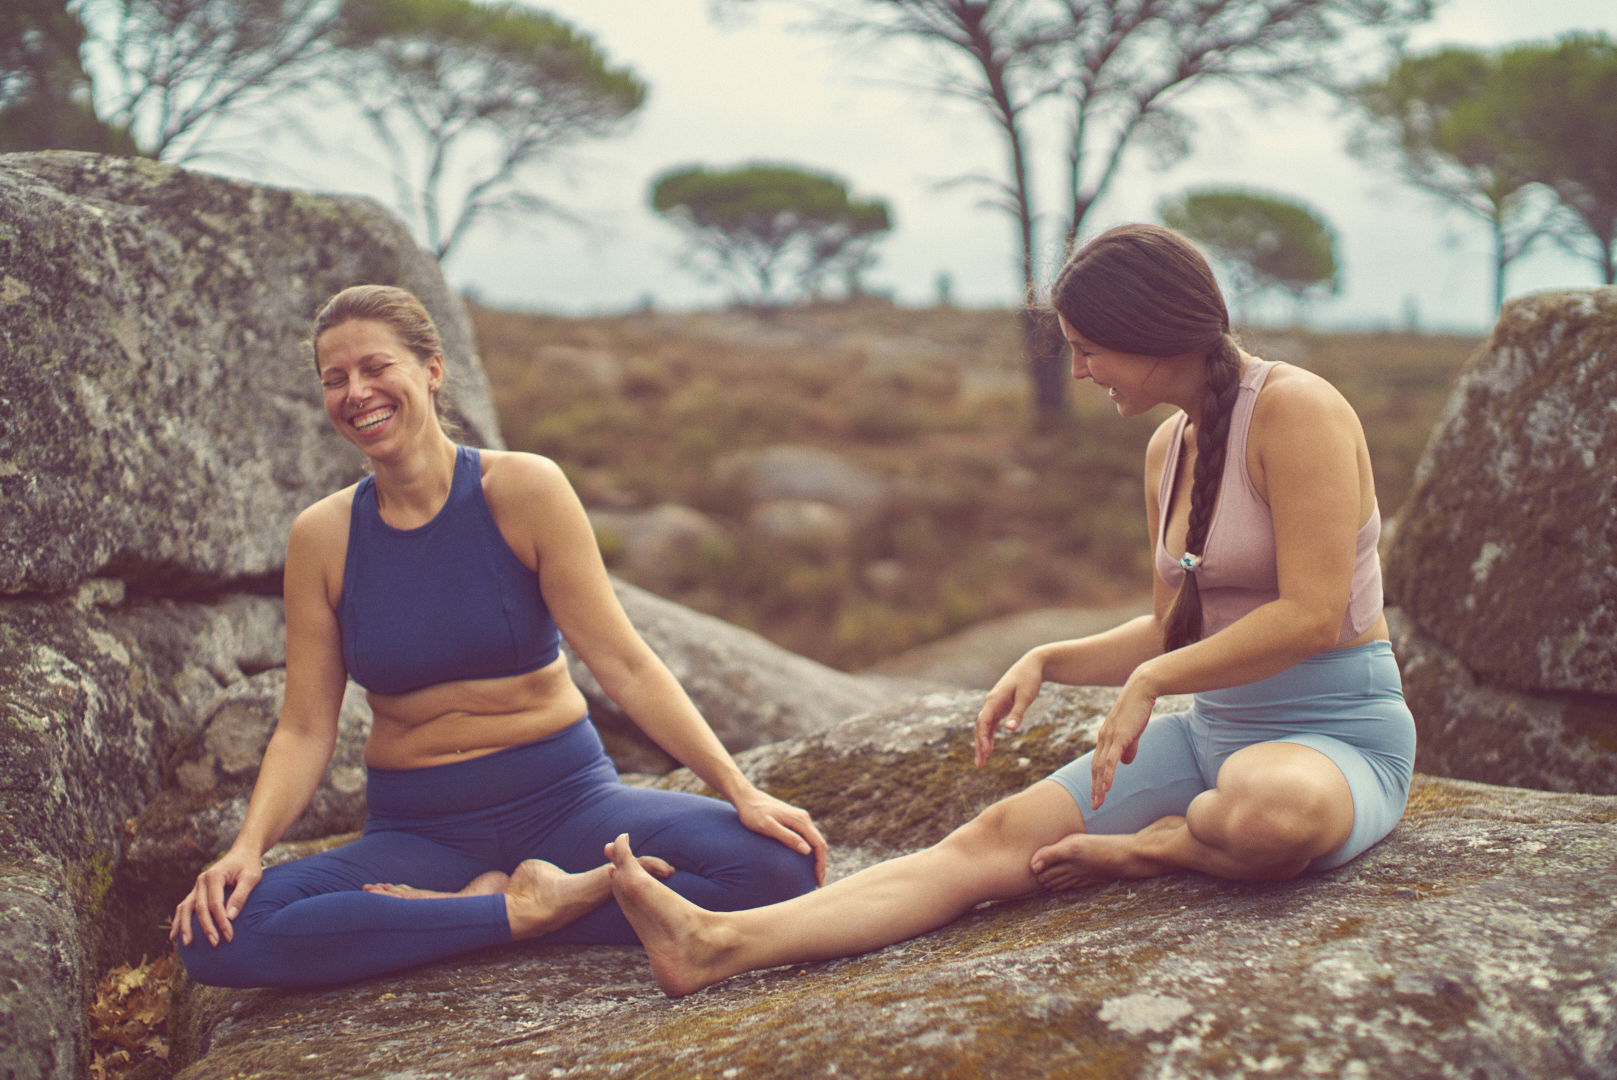 Body positive yoga